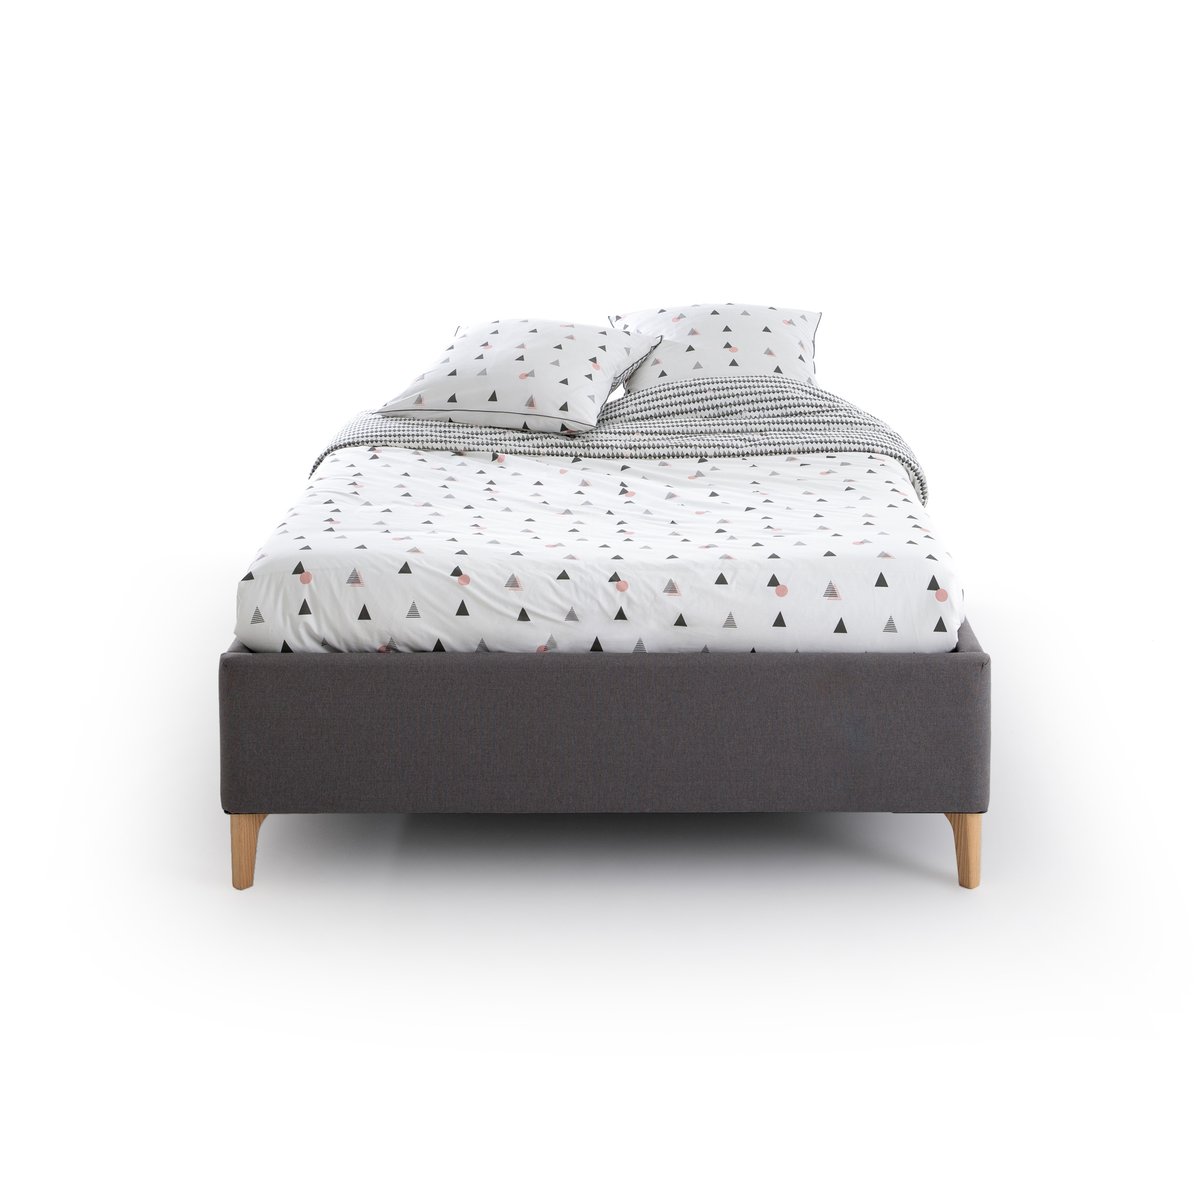 Кровать La Redoute С сундуком с приподнимаемым реечным основанием Idaho 140 x 190 см серый, размер 140 x 190 см - фото 2